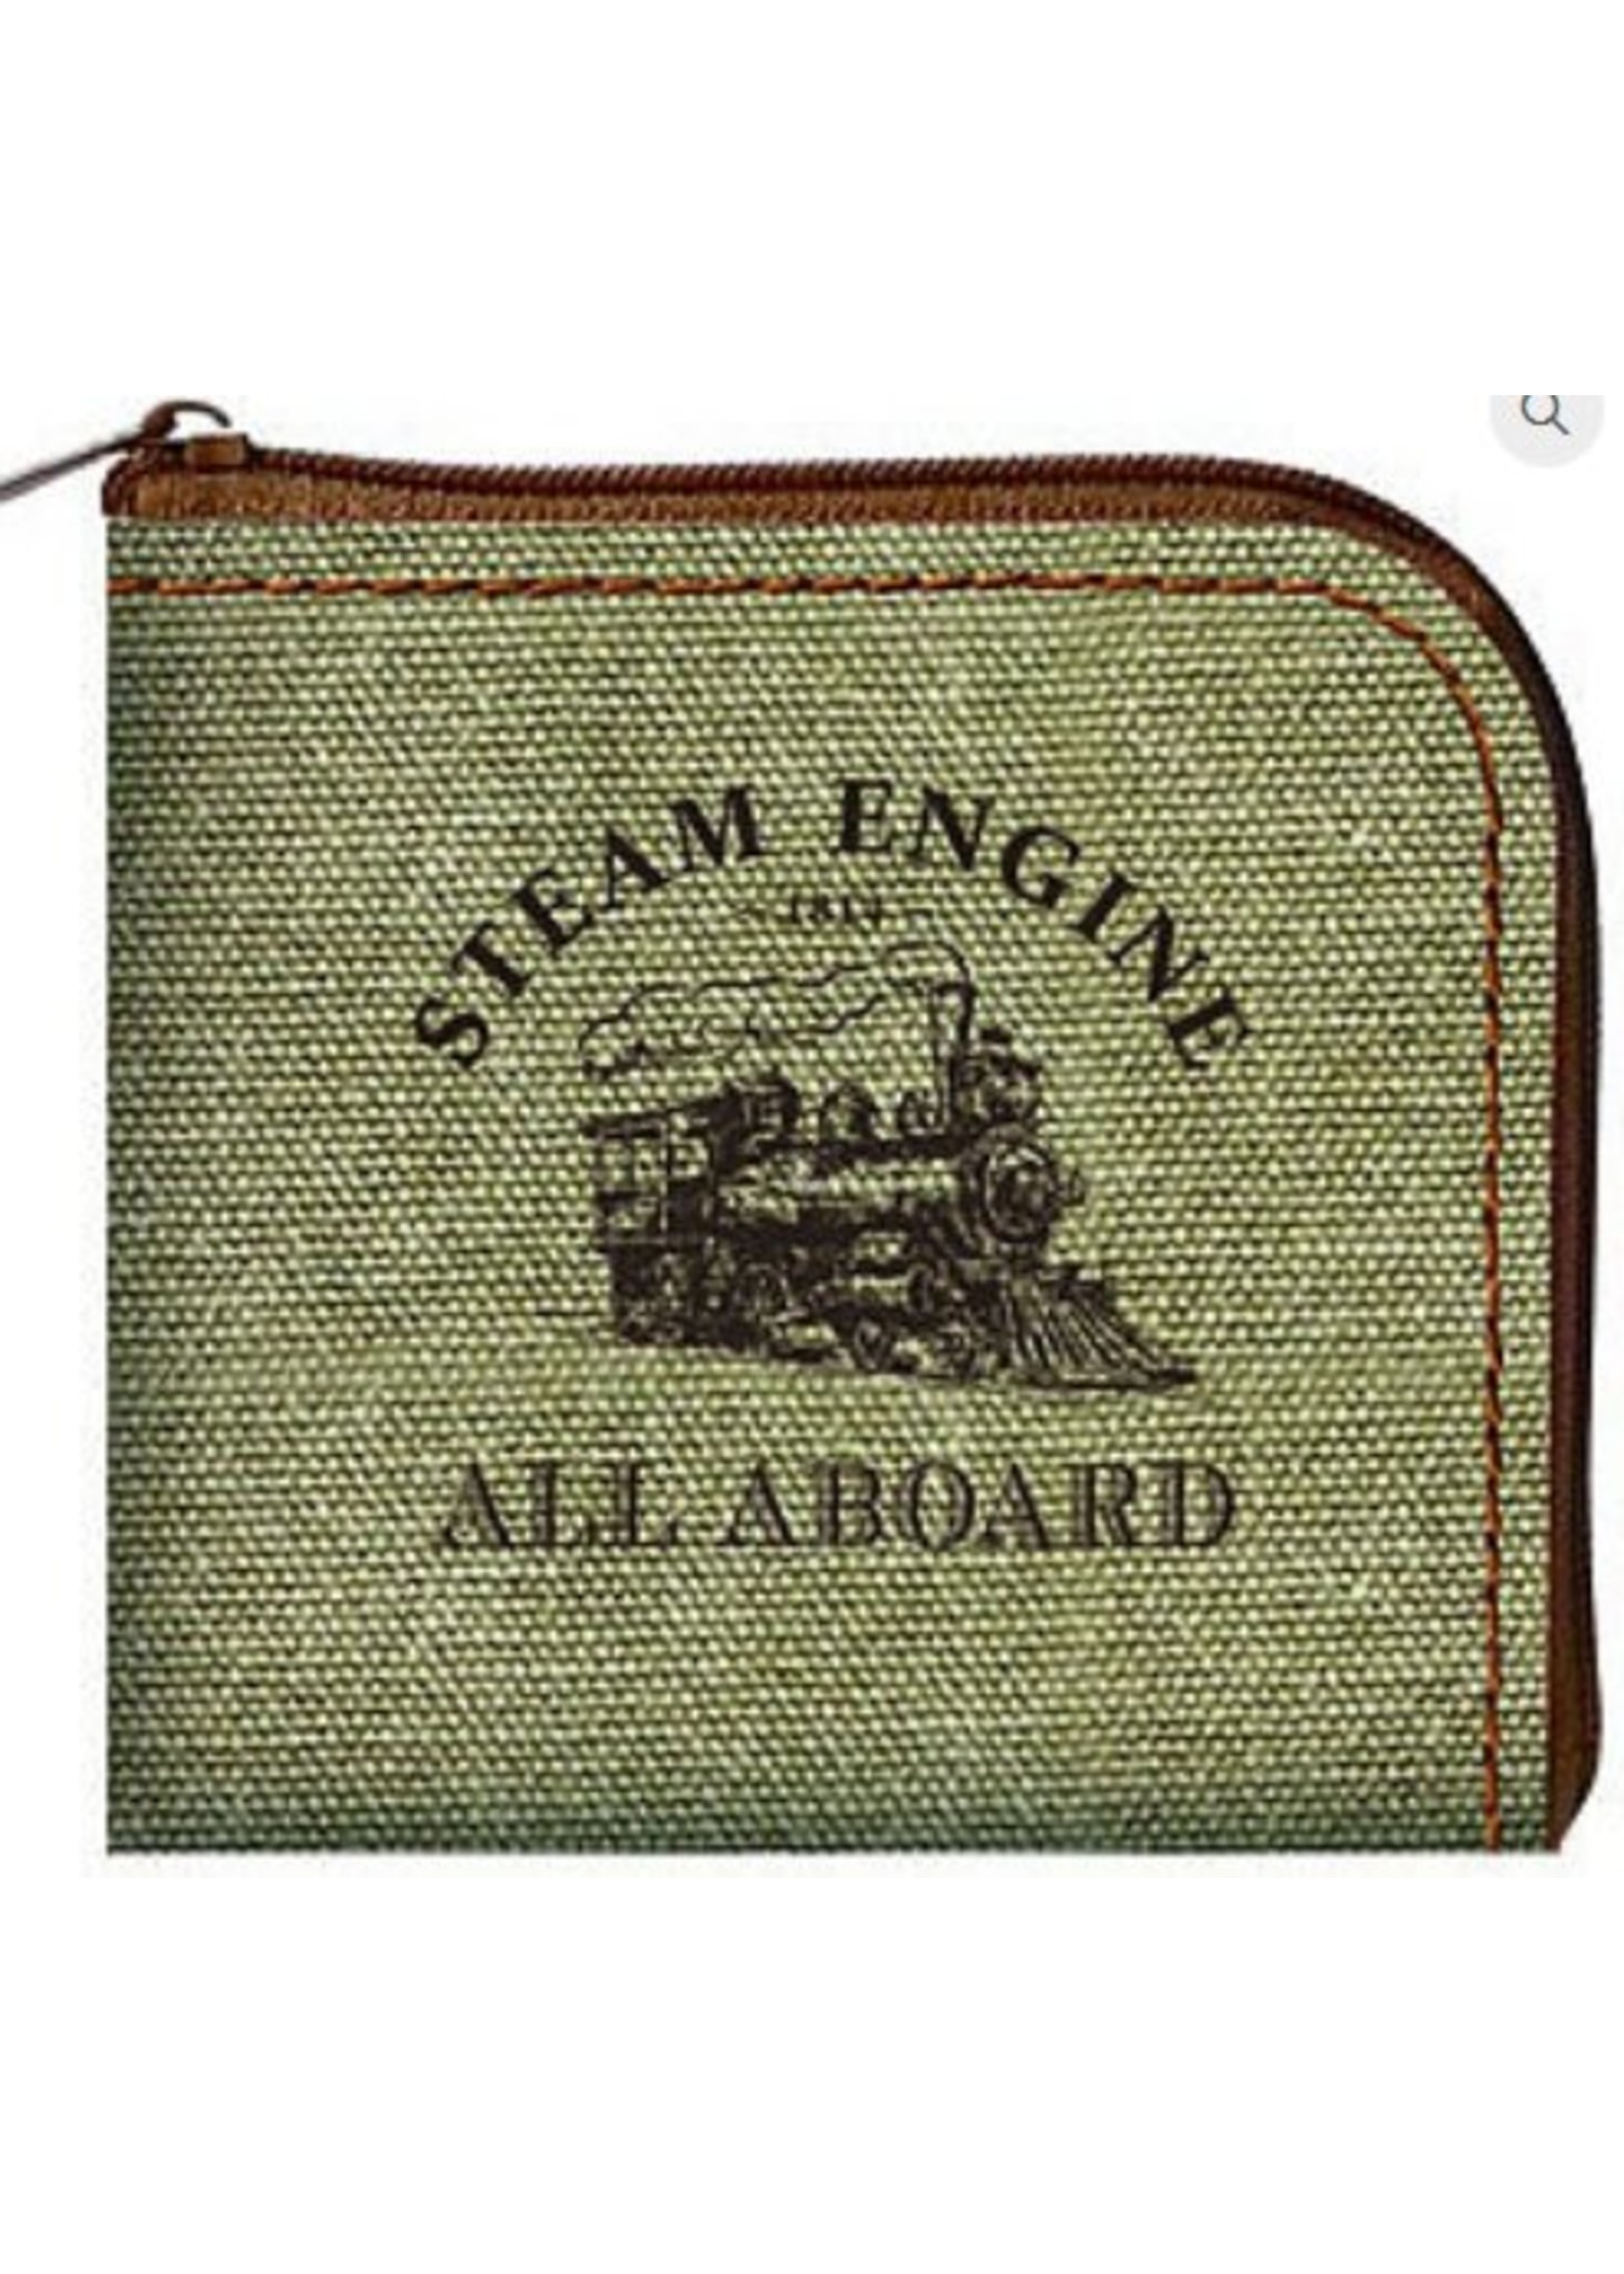 3T Rail Products Steam Train Coin Purse